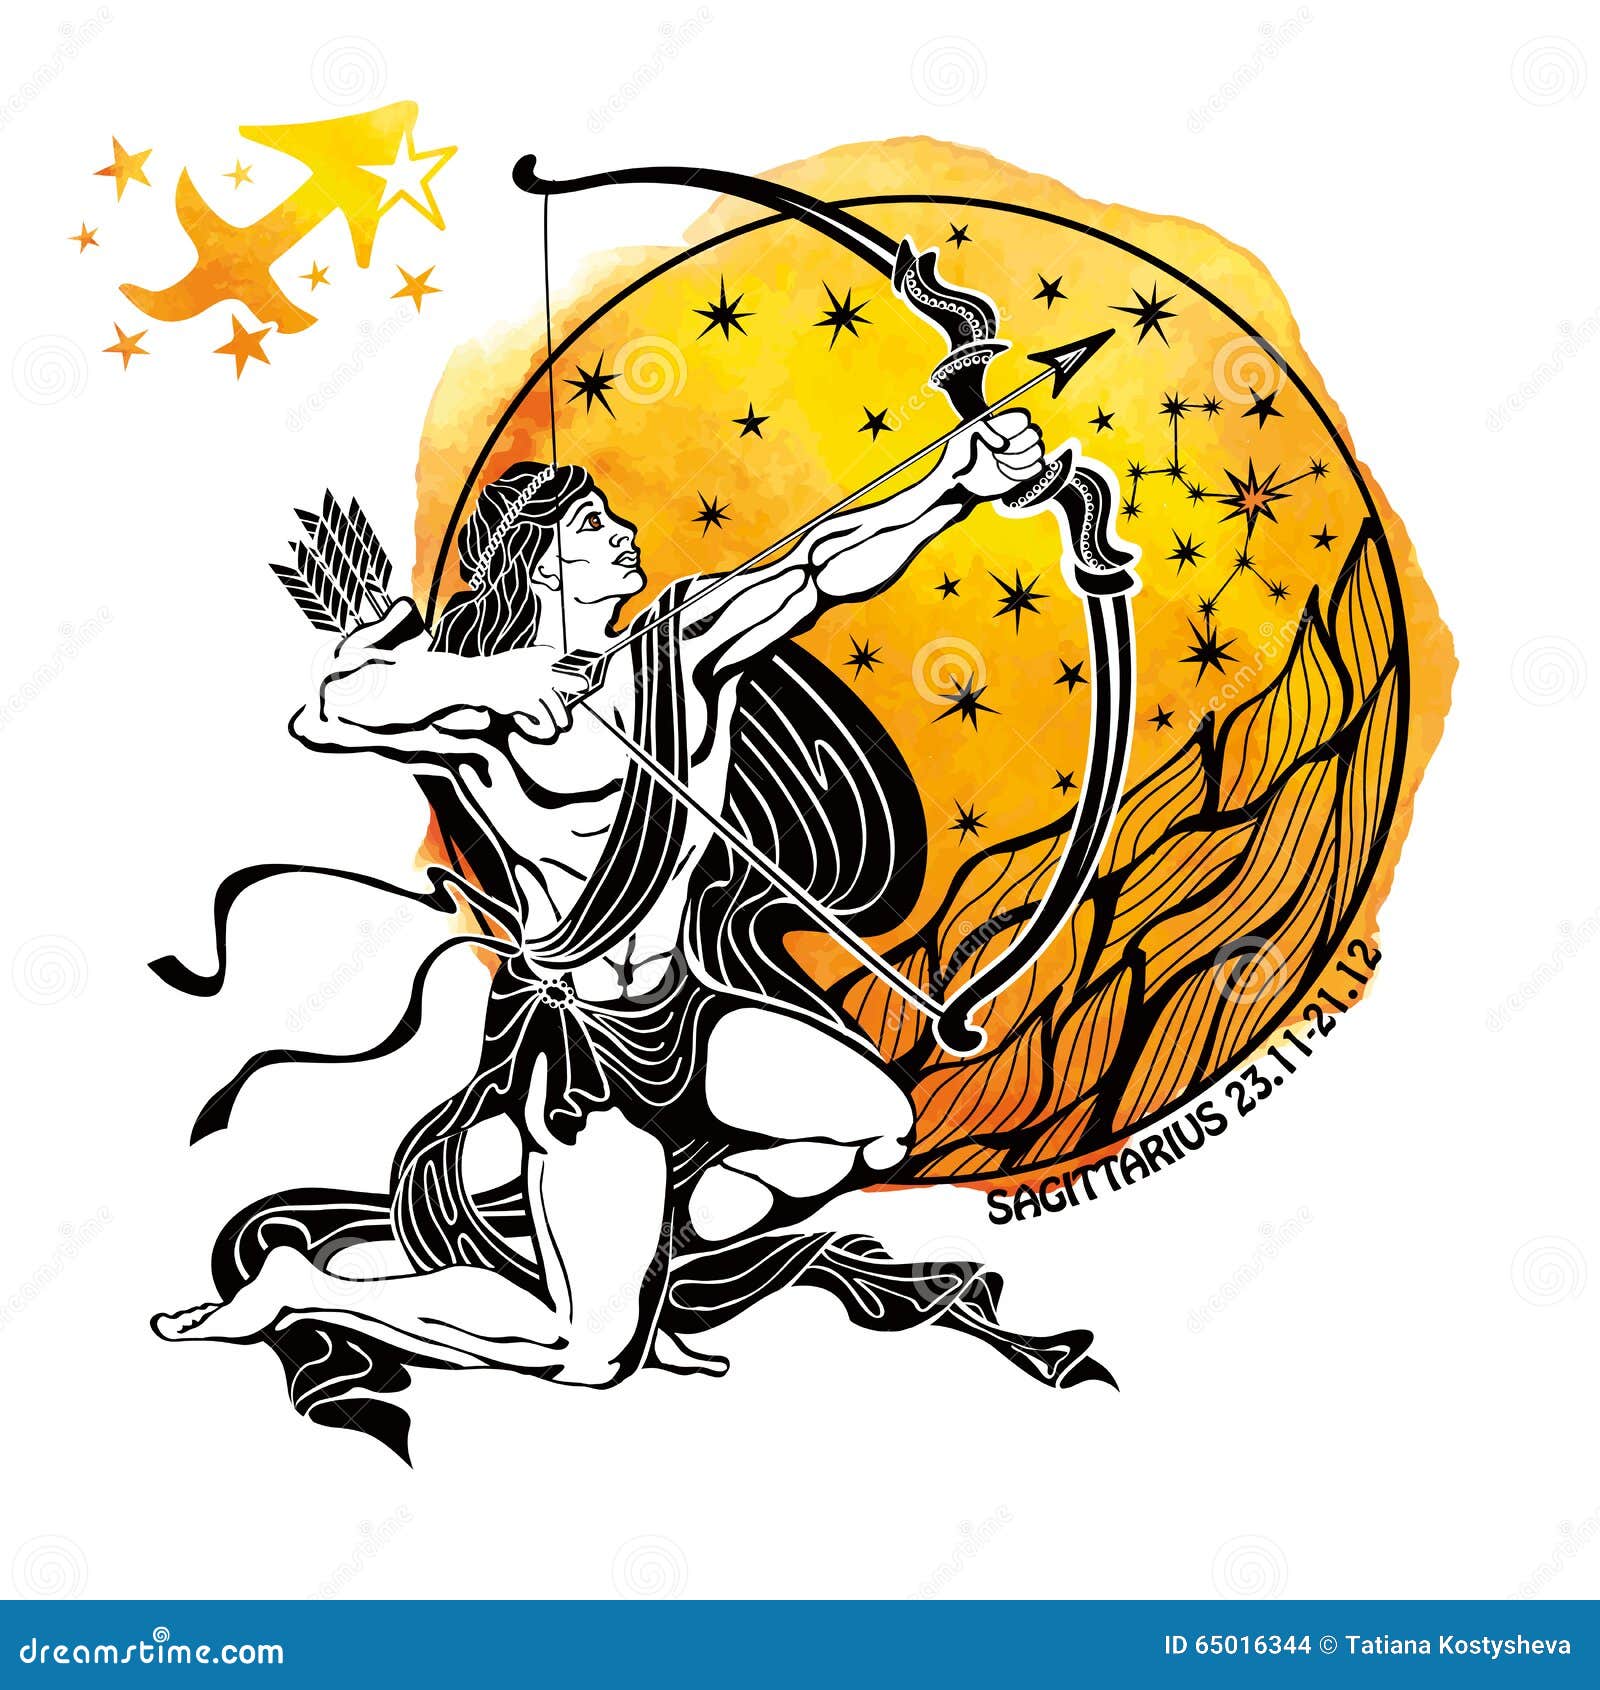 Sagittarius Zodiac Sign Art